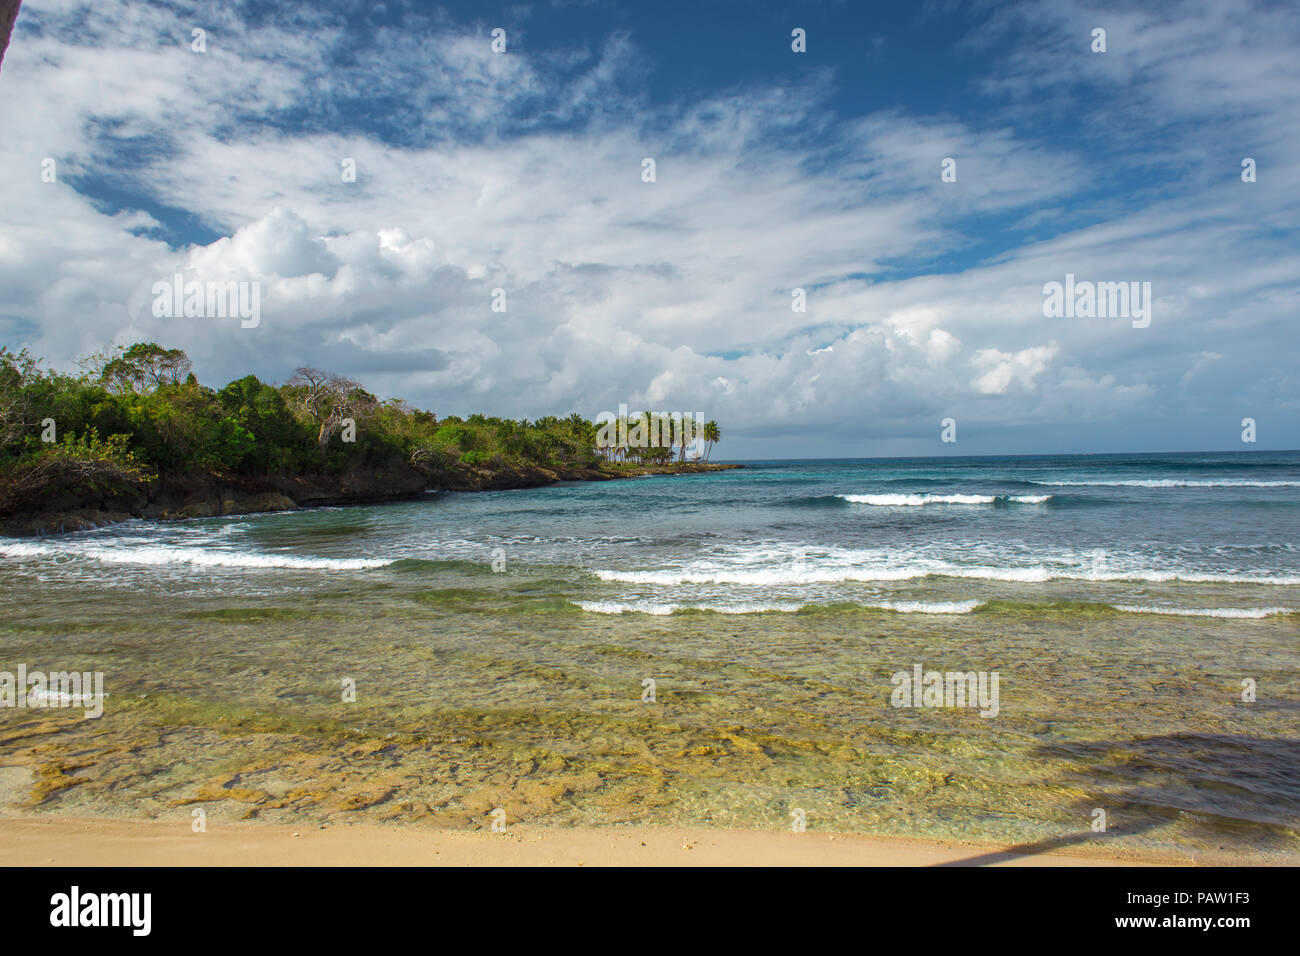 scenic beautiful Caribbean landscape, Dominican Republic Stock Photo